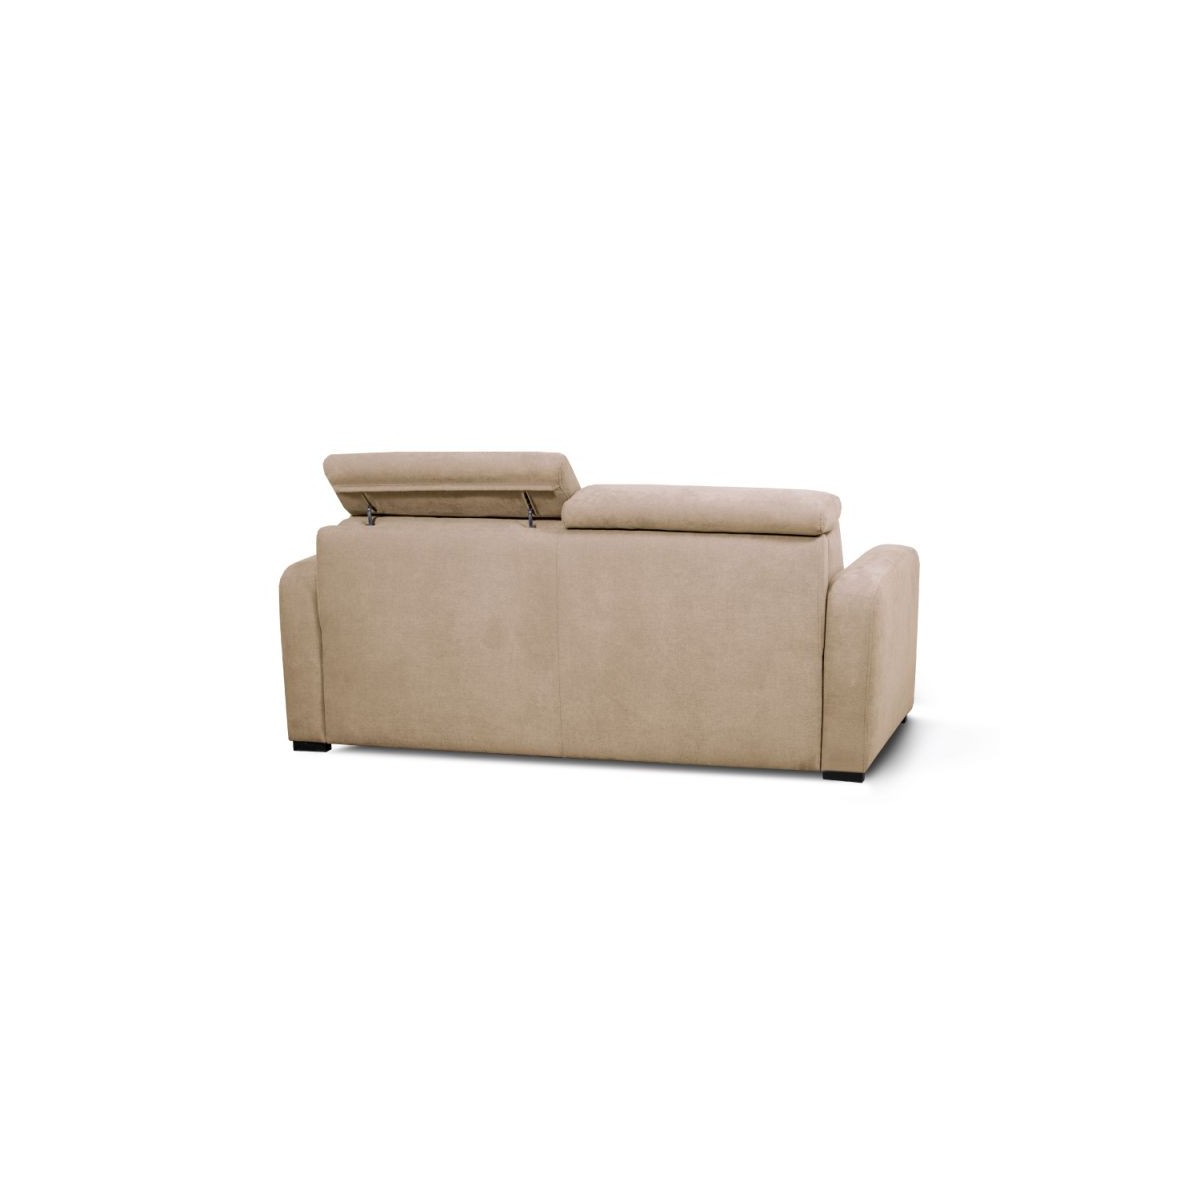 EVERGREENWEB – Sofá cama Clic Clac de tela color beige, sofá cama de 3  plazas de diseño moderno, práctico y cómodo con colchón de espuma – Modelo